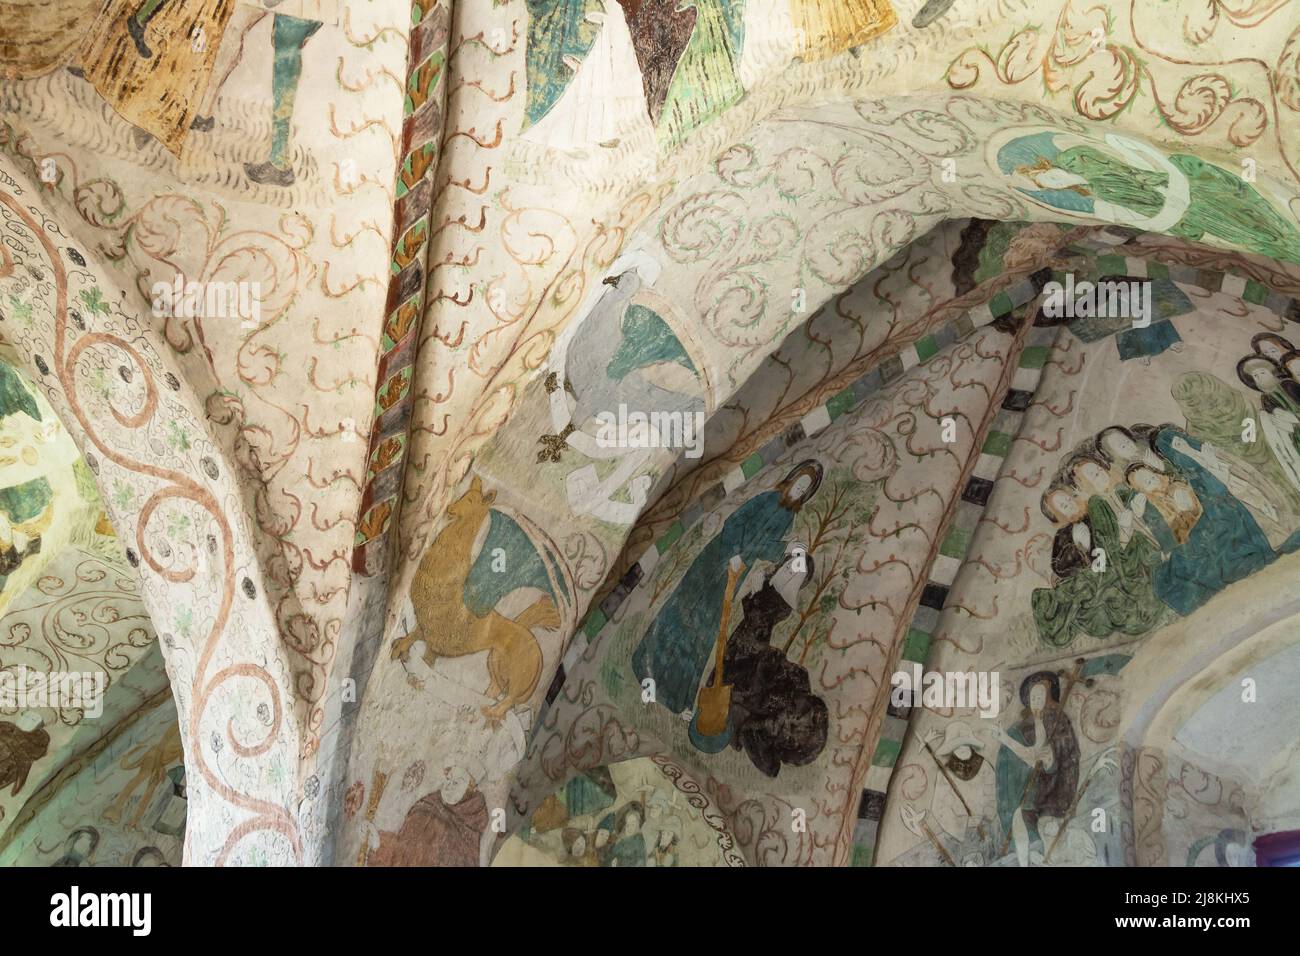 Fresken an der Decke der mittelalterlichen Steinkirche in Hattula Finnland Stockfoto